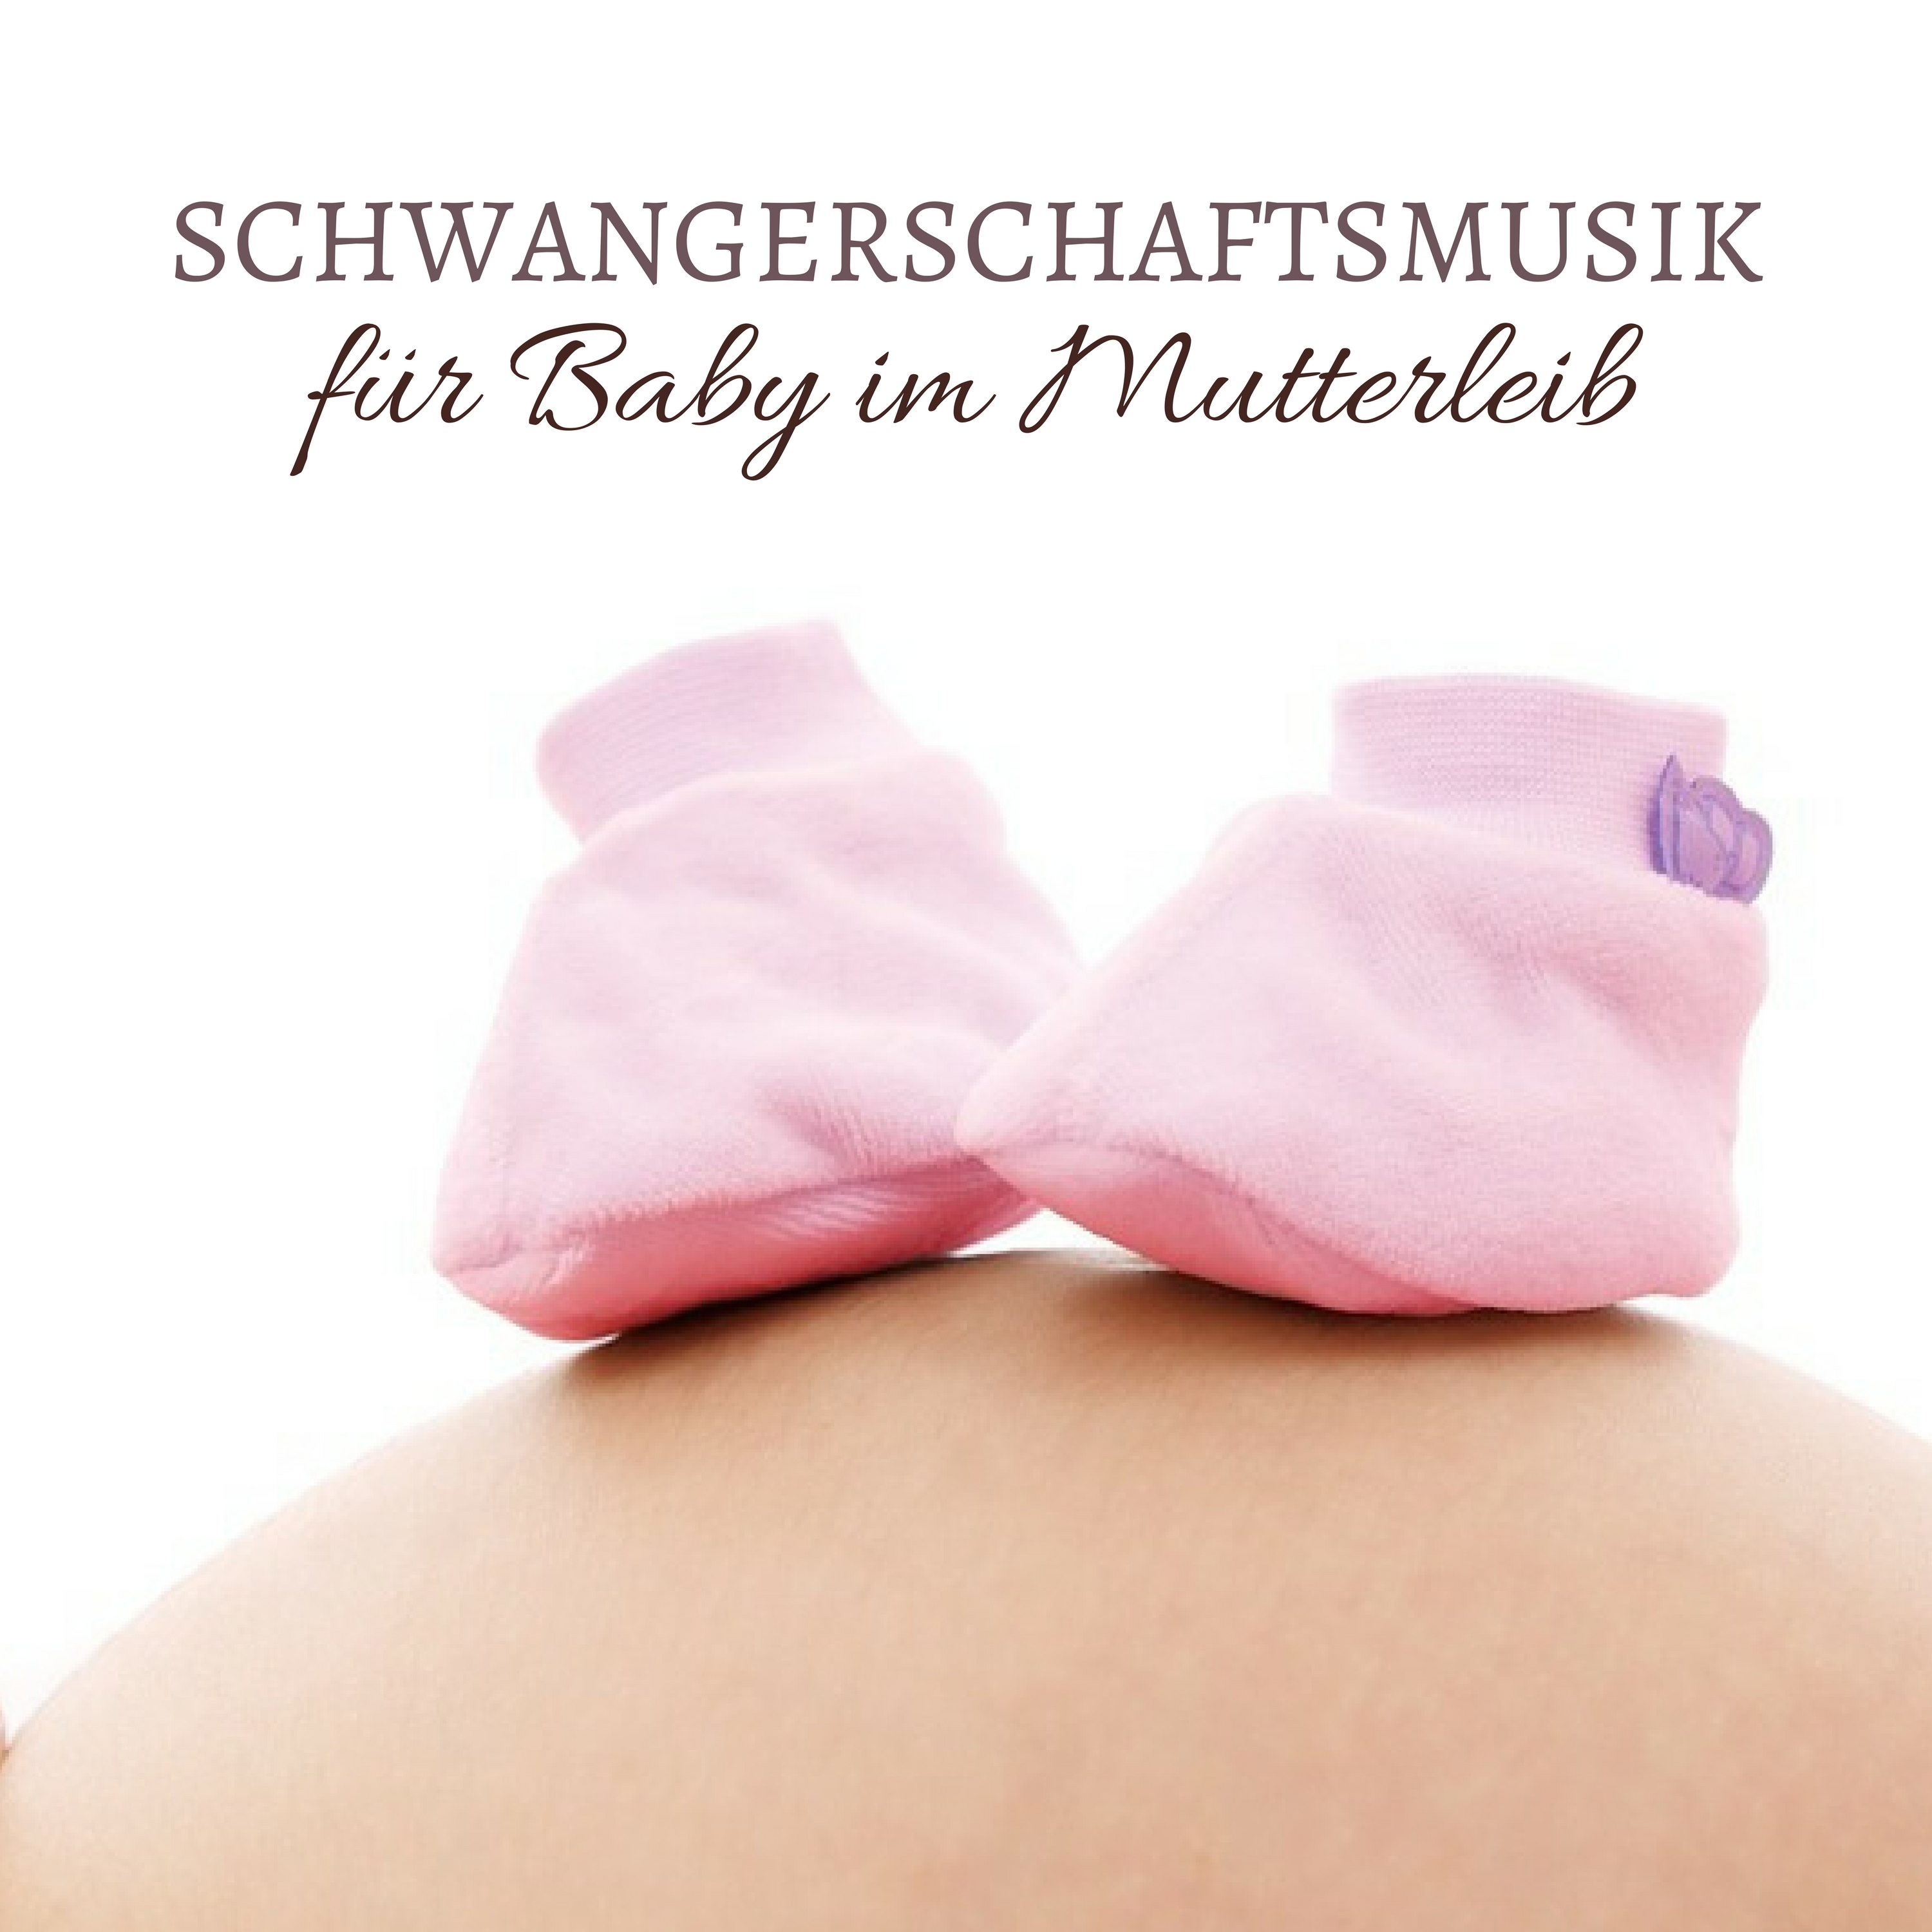 Schwangerschaftsmusik fü r Baby im Mutterleib  Entspannende Klaviermusik zur Entspannung